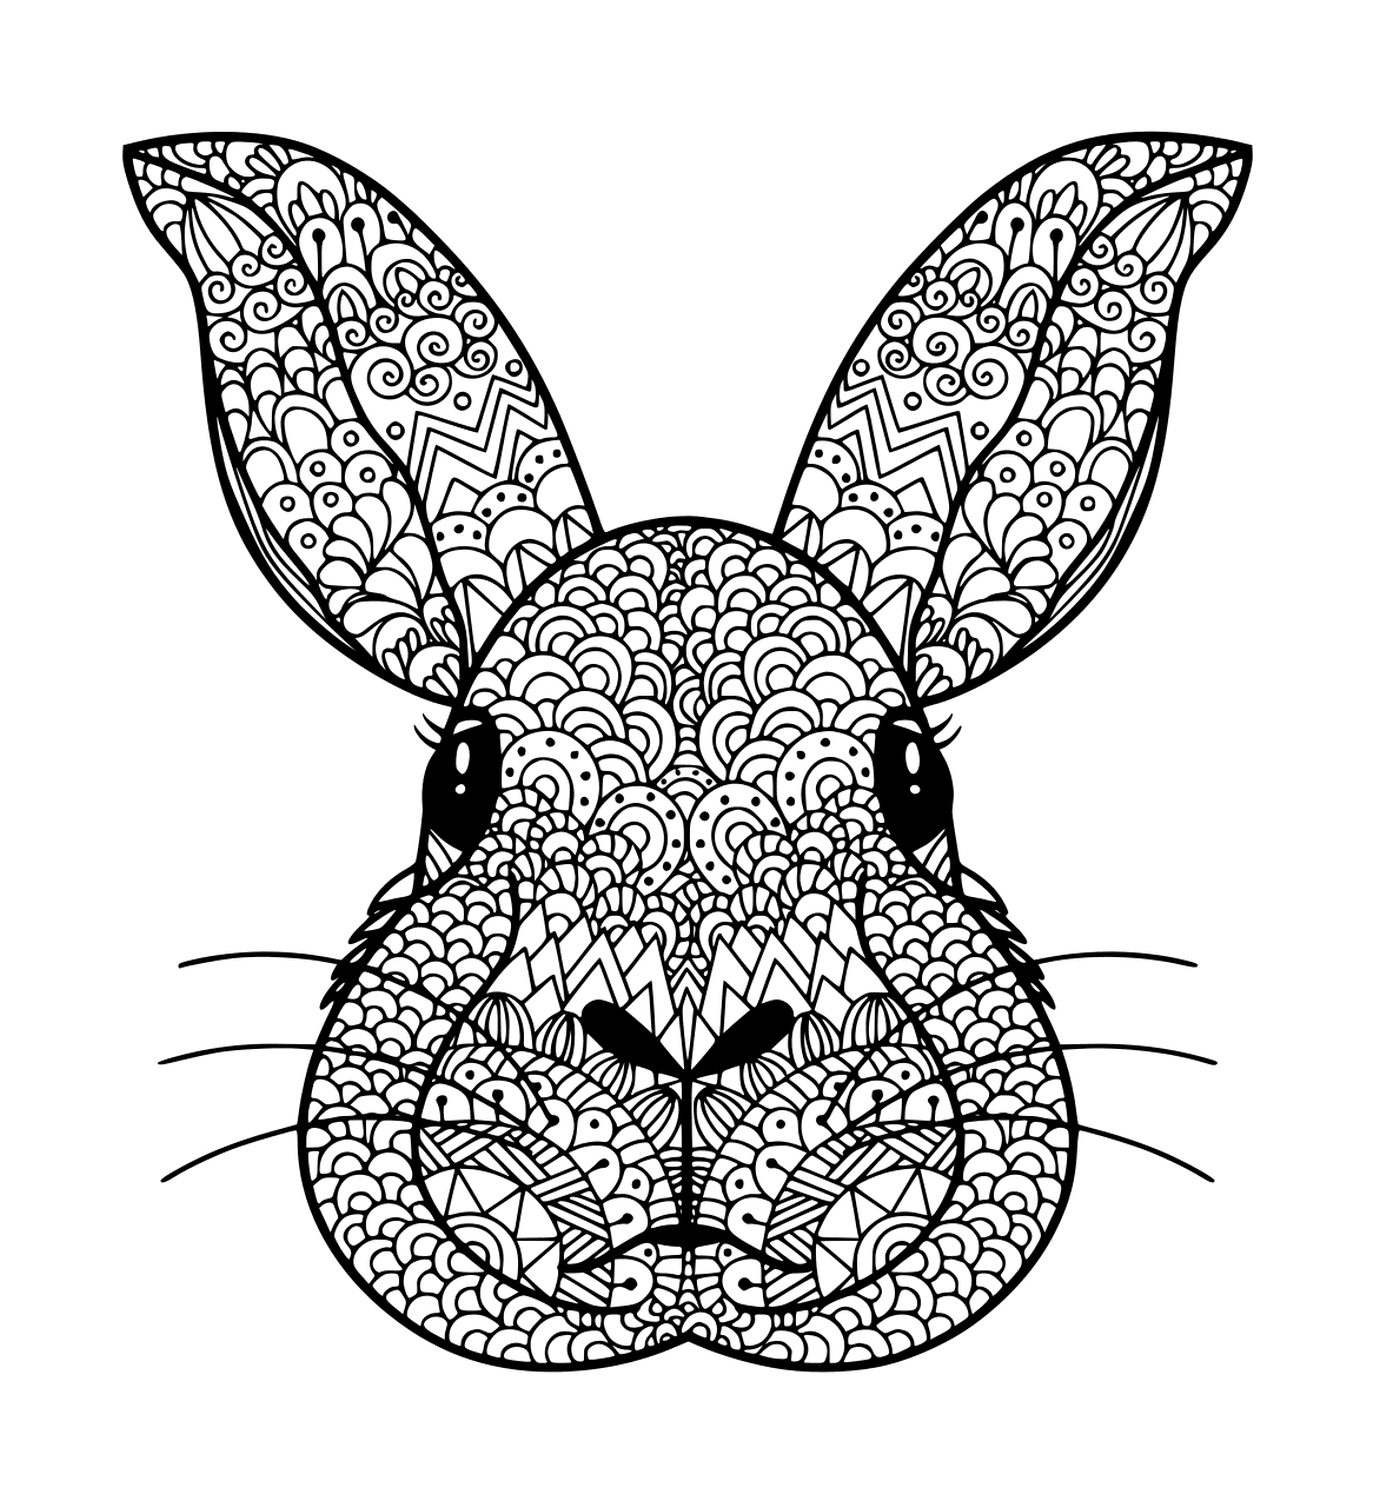  Testa di coniglio colorata 